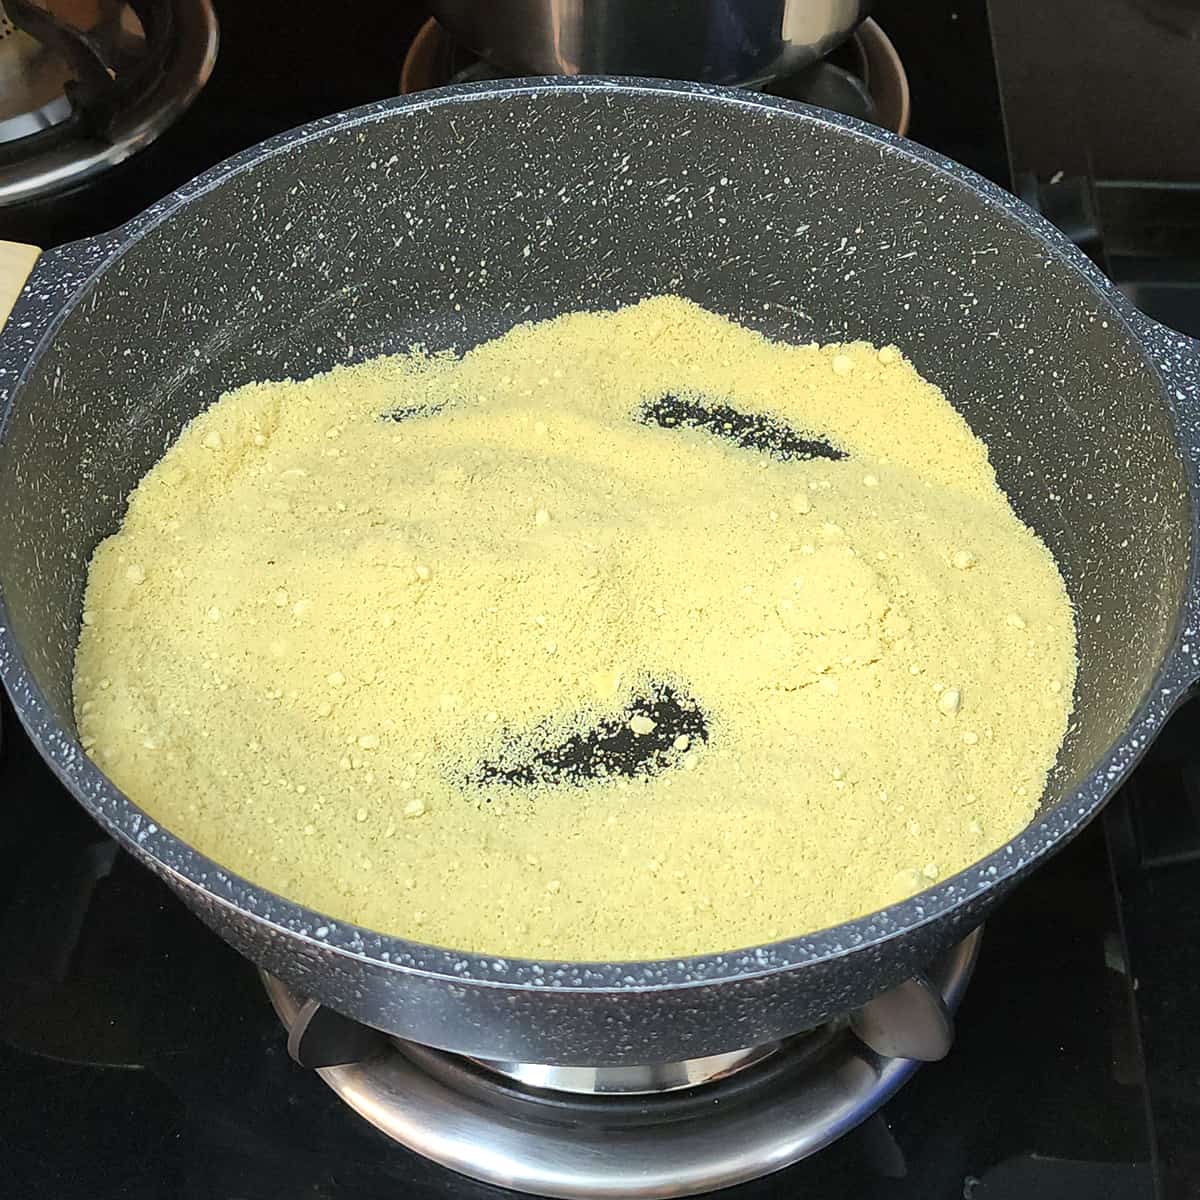 Roast besan (chickpea flour).